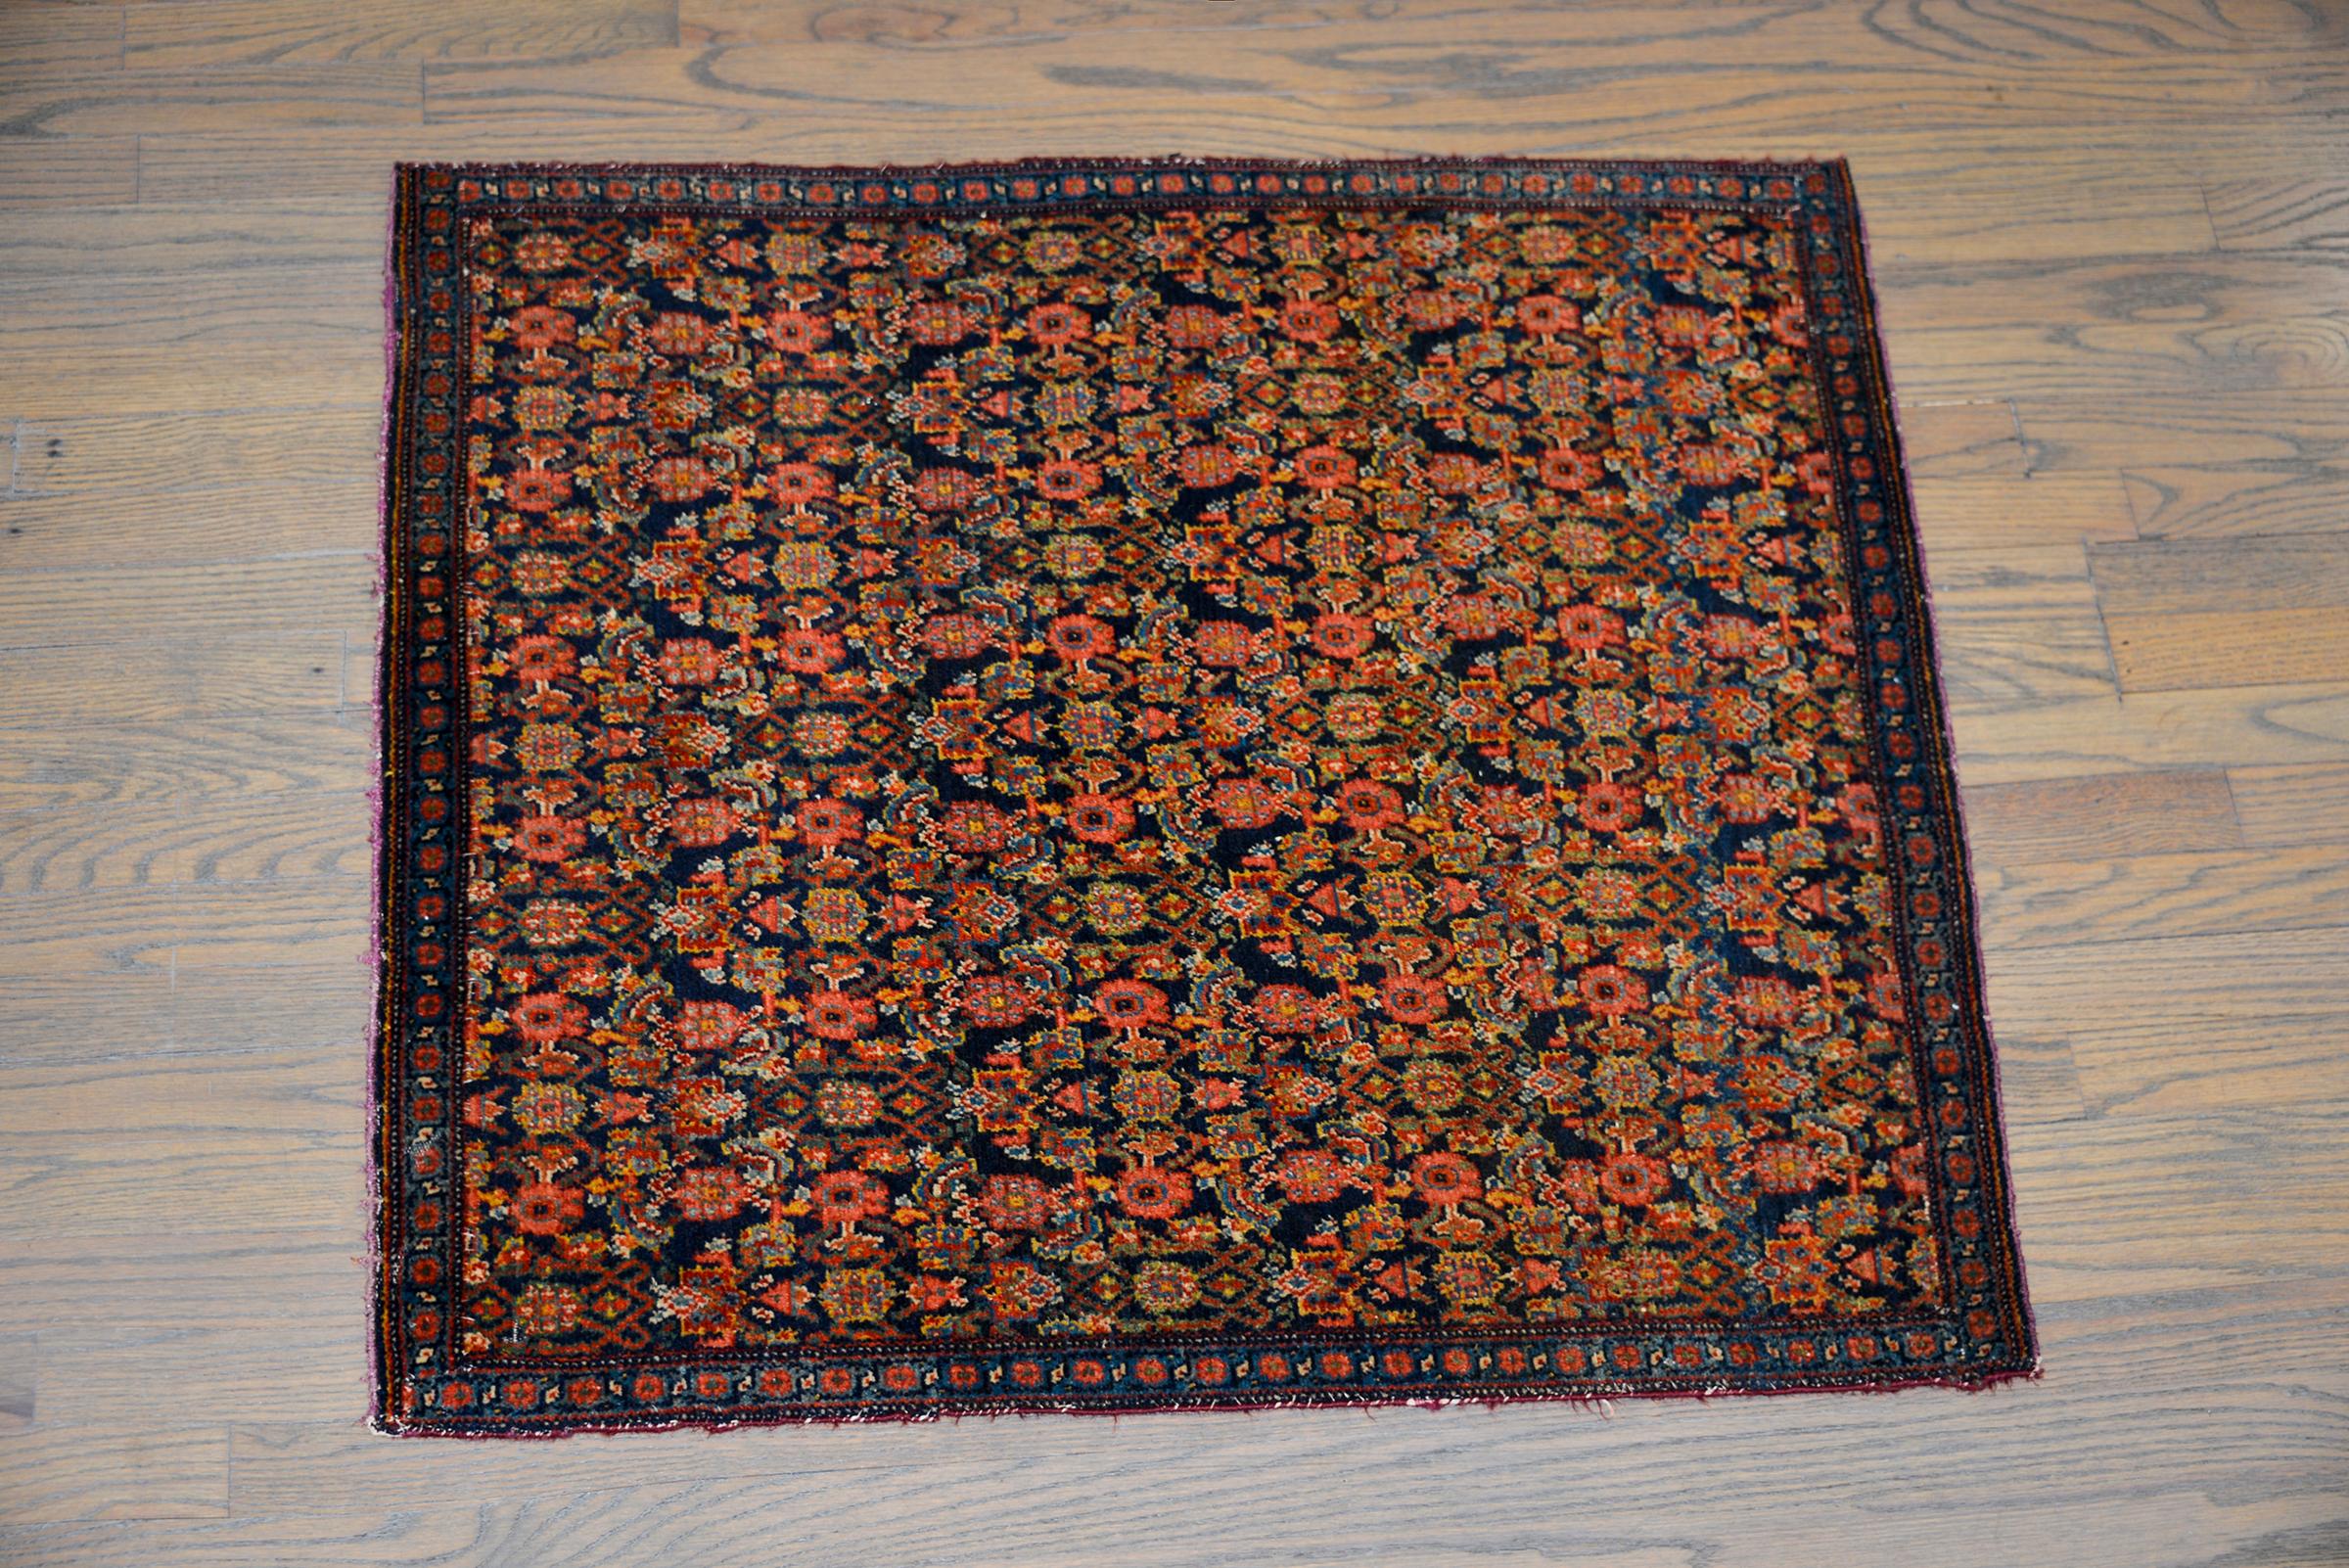 Ein unglaublicher persischer Senneh-Teppich aus dem frühen 20. Jahrhundert mit einem floralen Spaliermuster, das in unzähligen Farben gewebt ist, darunter Karminrot, Gold, Grün, helles Indigo und Rosa, und vor einem dunklen indigoblauen Hintergrund